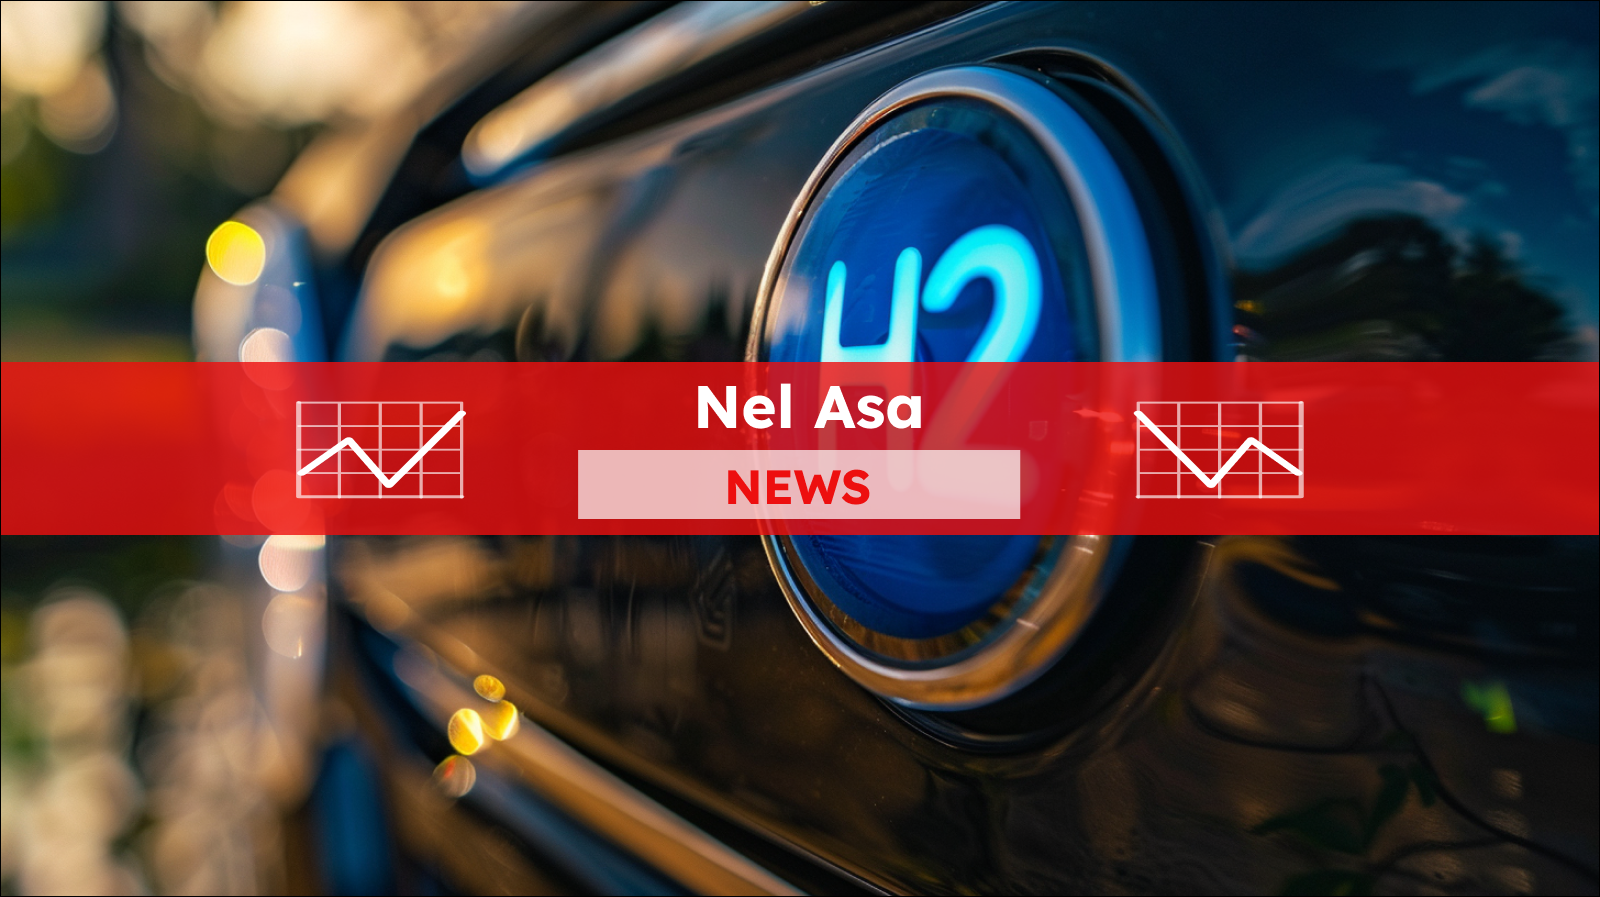 Eine Nahaufnahme einer Fahrzeugplakette mit dem blauen H2-Symbol, mit einem Nel ASA NEWS-Banner drüber